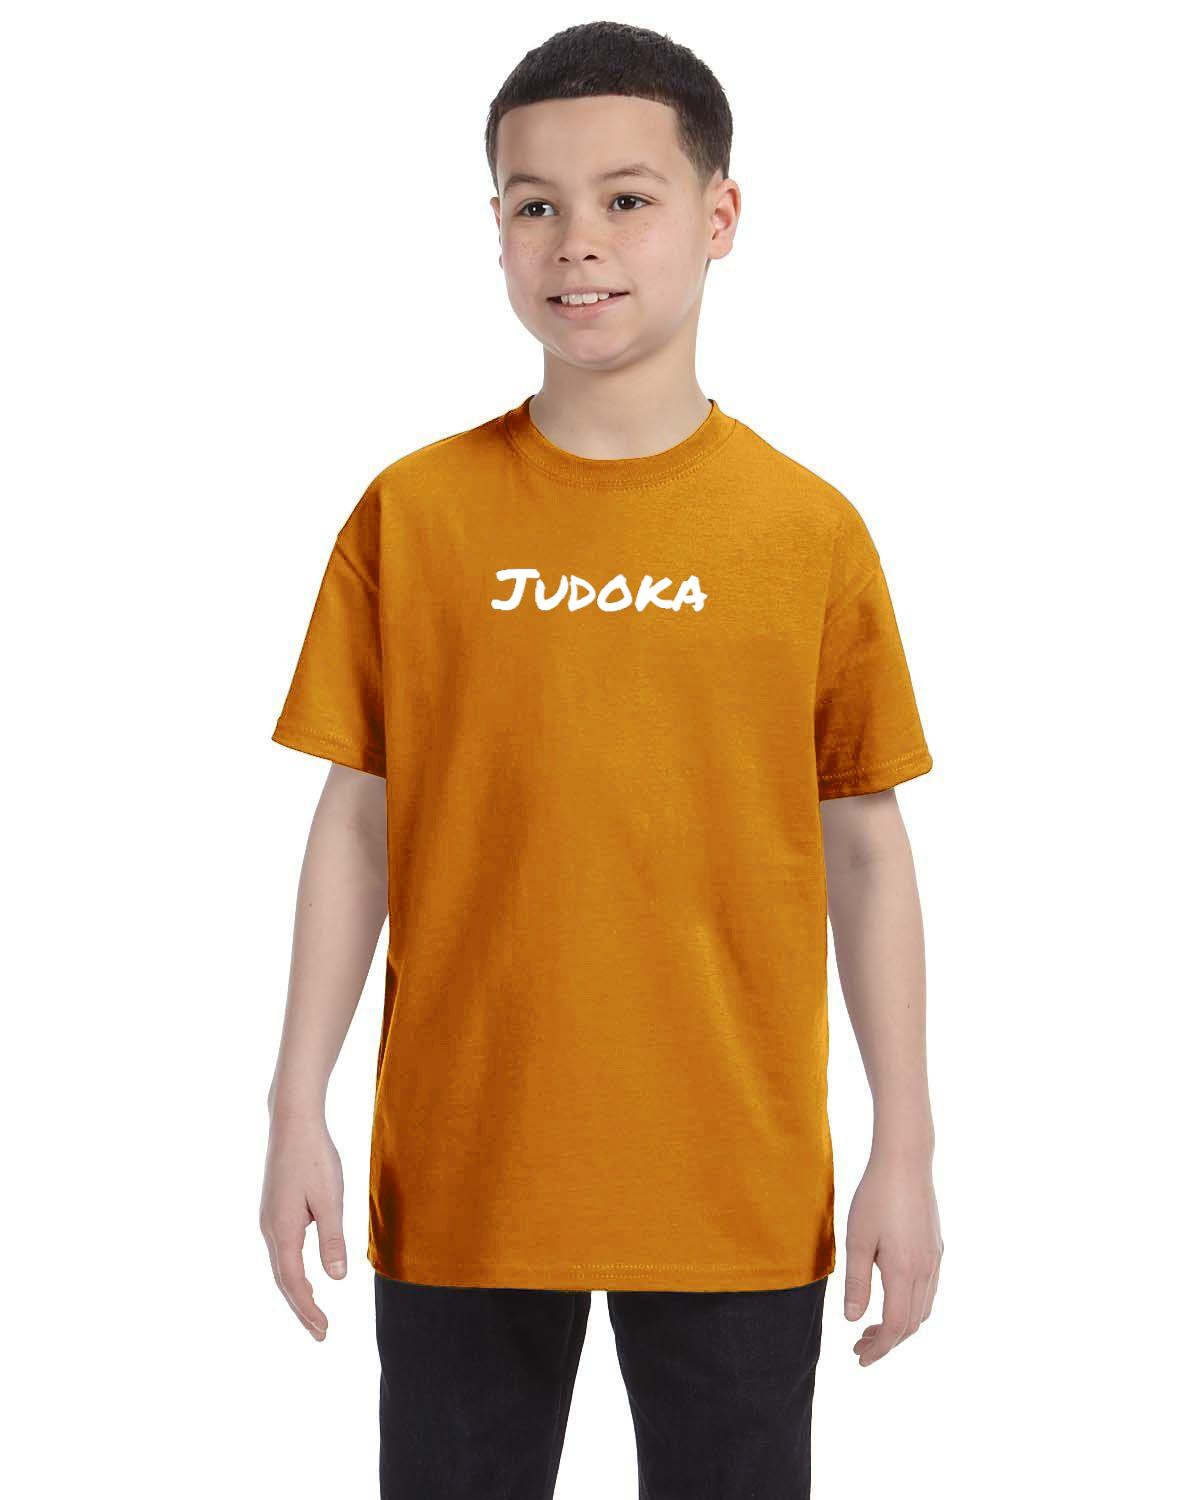 Judoka Kids T-Shirt